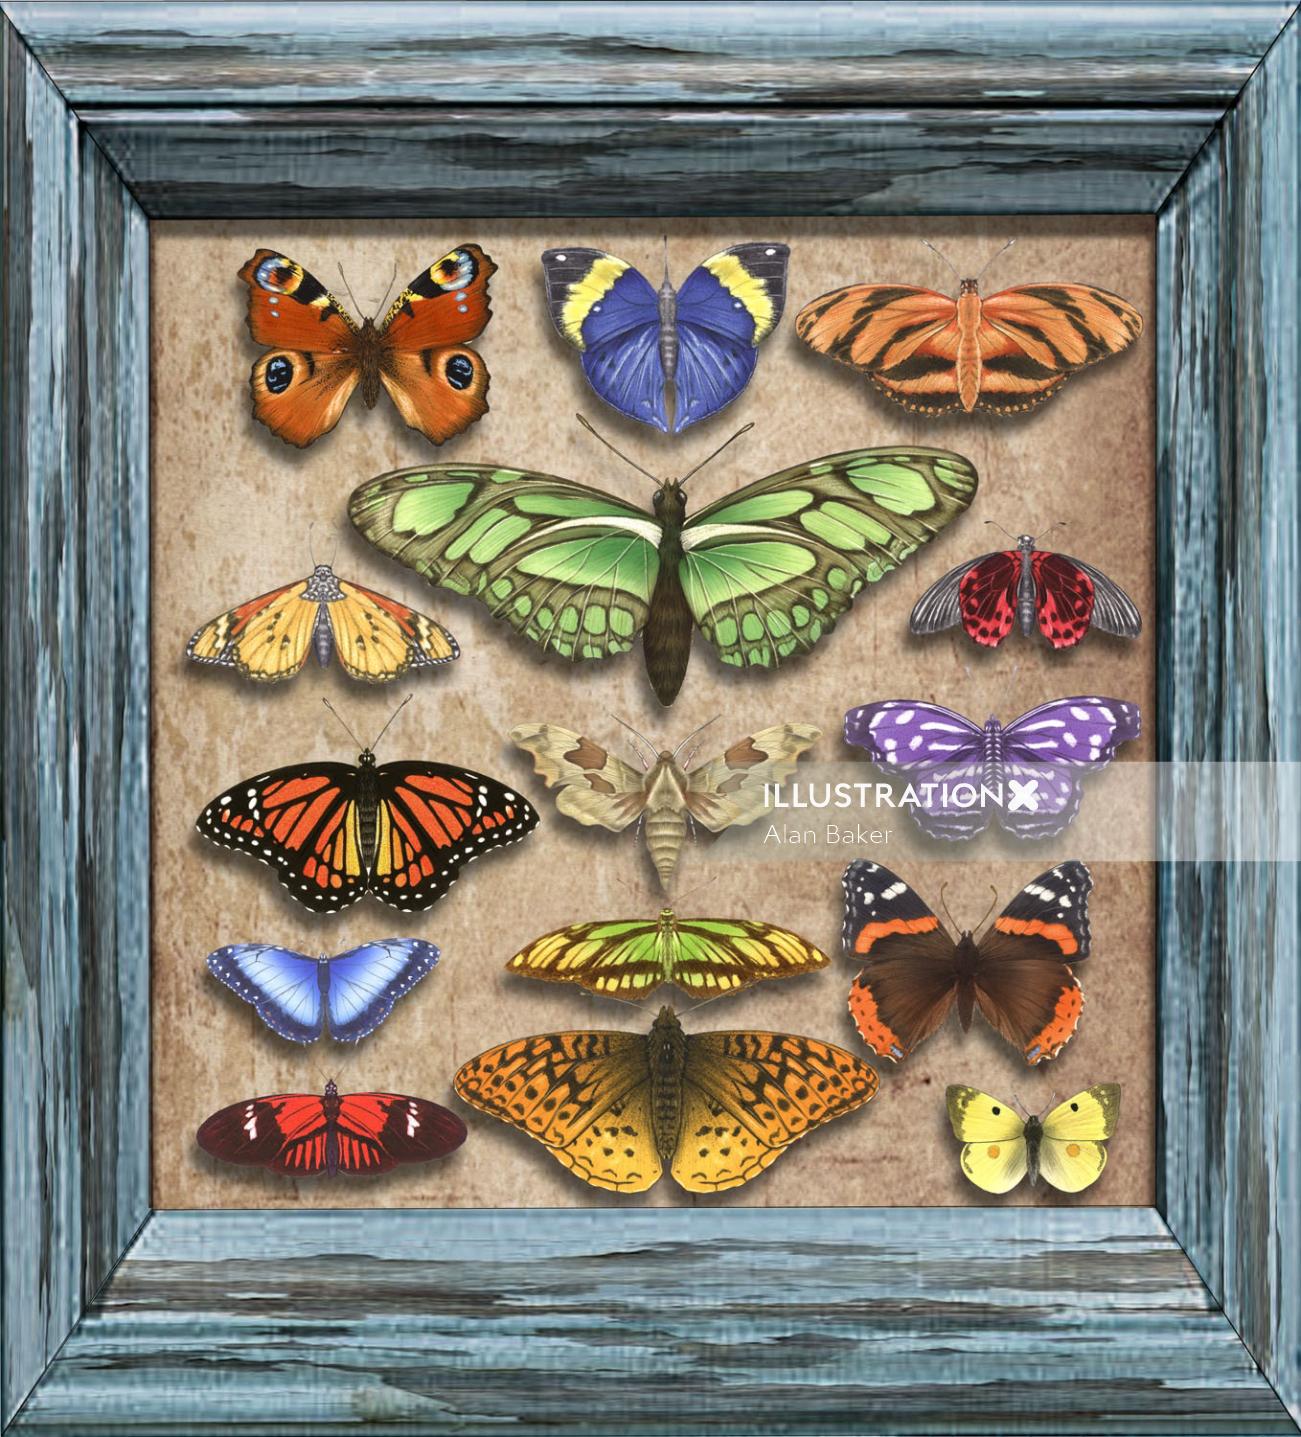 フレーム内の蝶-アランベイカーによるイラスト